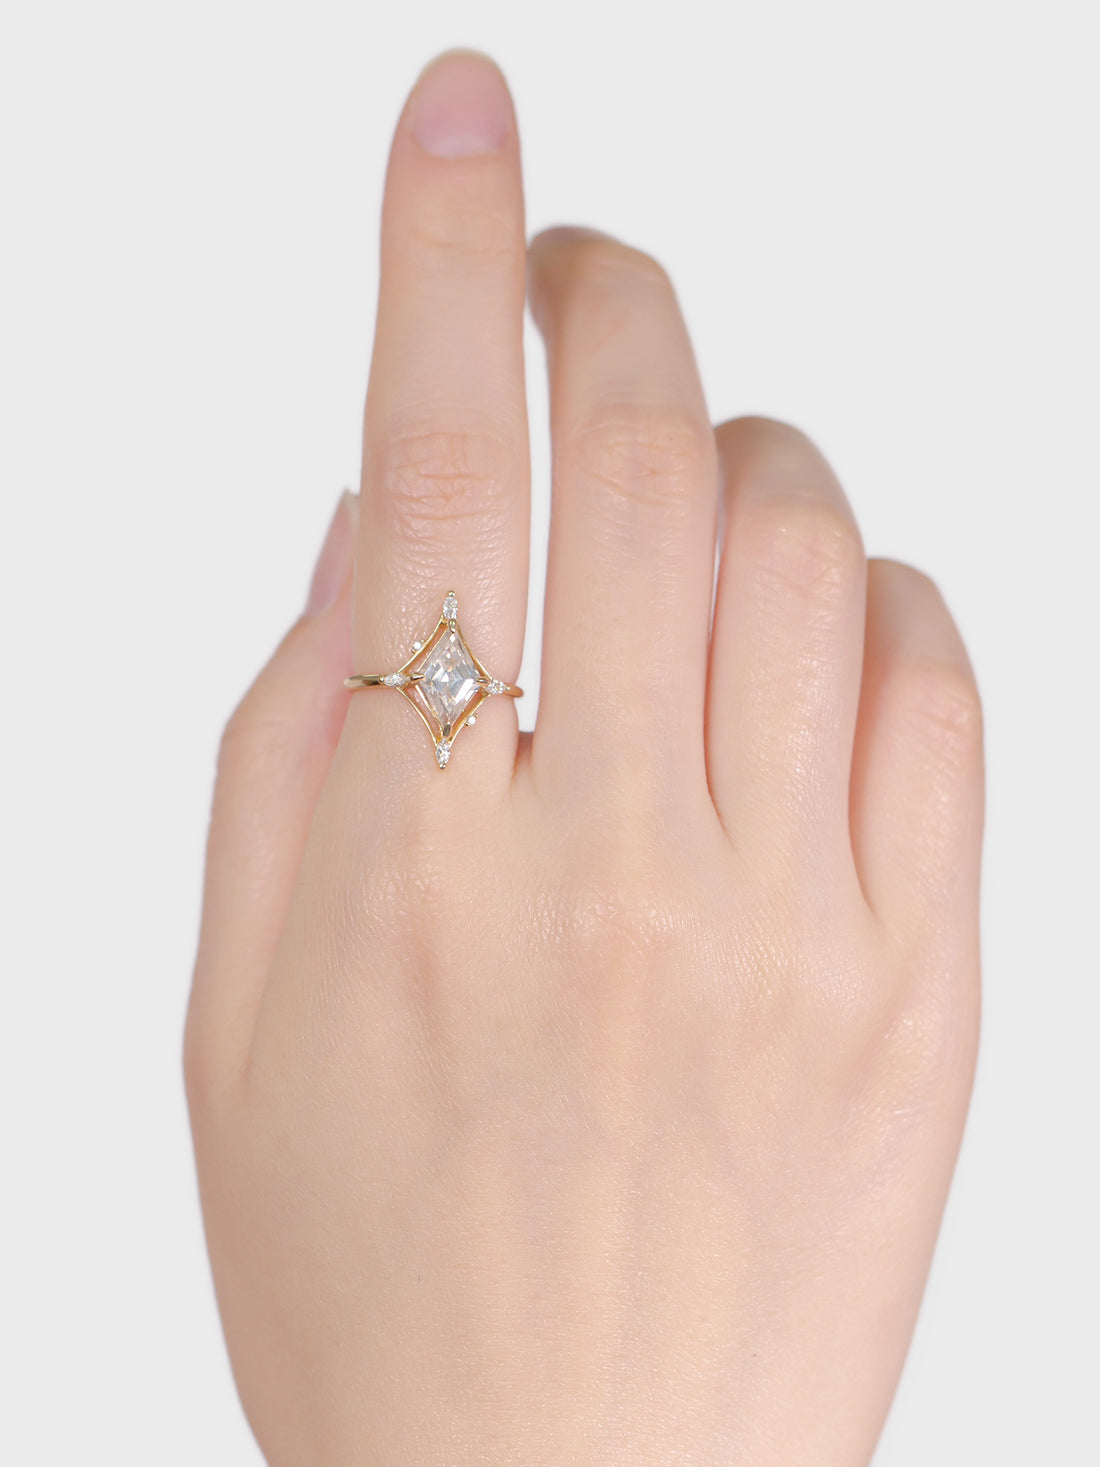 hiddenspace-jewelry-engagement-rings-dakota-moissanite-diamond-14k-yellow-gold-hand-1